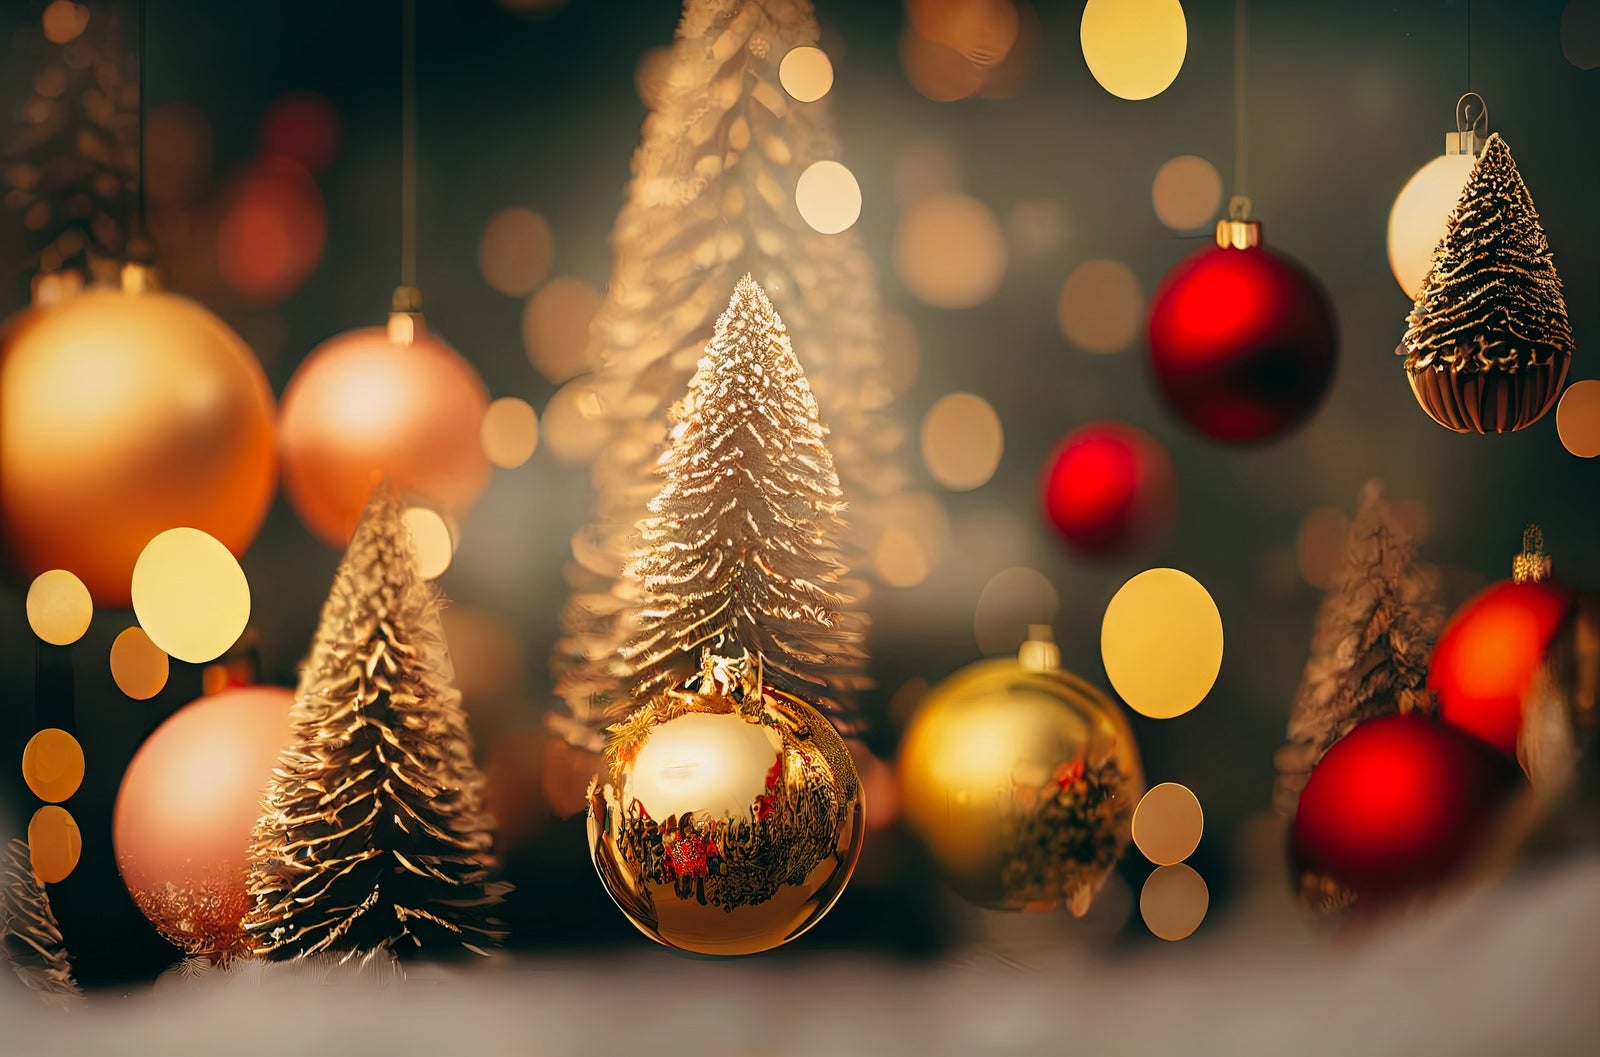 「クリスマスツリーとライトアップ | フリー素材のぱくたそ」の写真